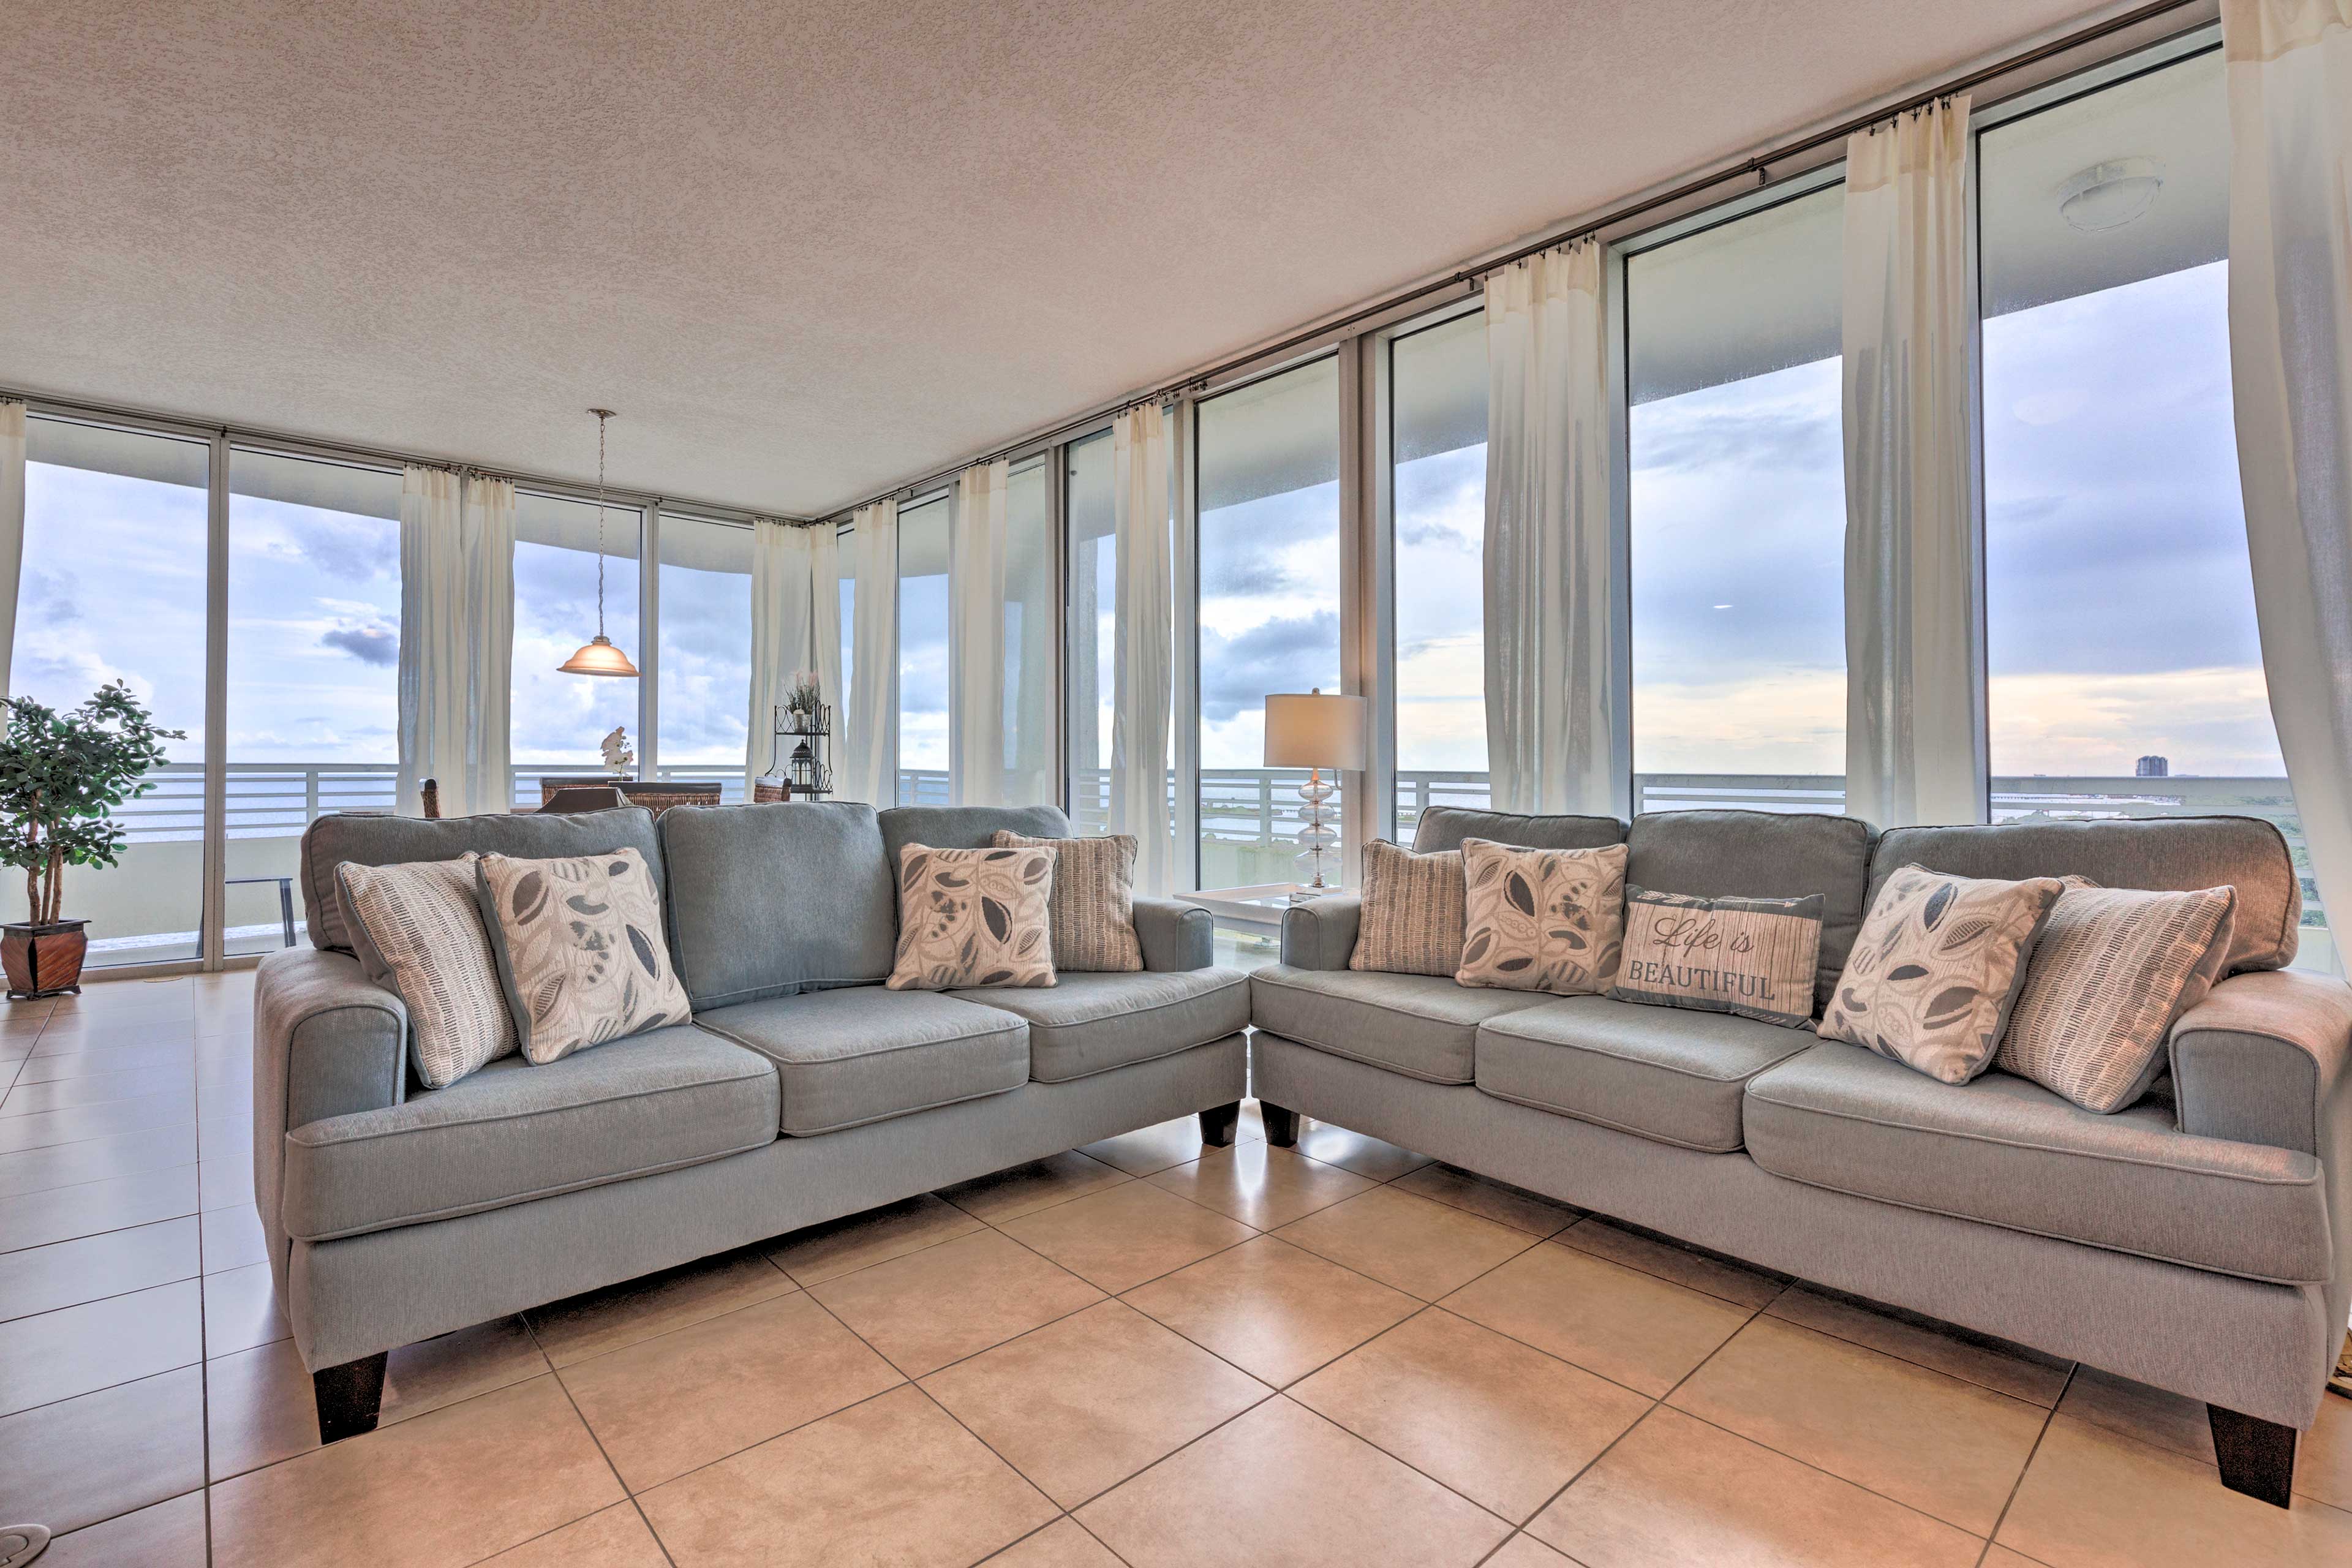 Property Image 1 - Luxurious Biloxi Beach Condo w/ Amenities & Views!